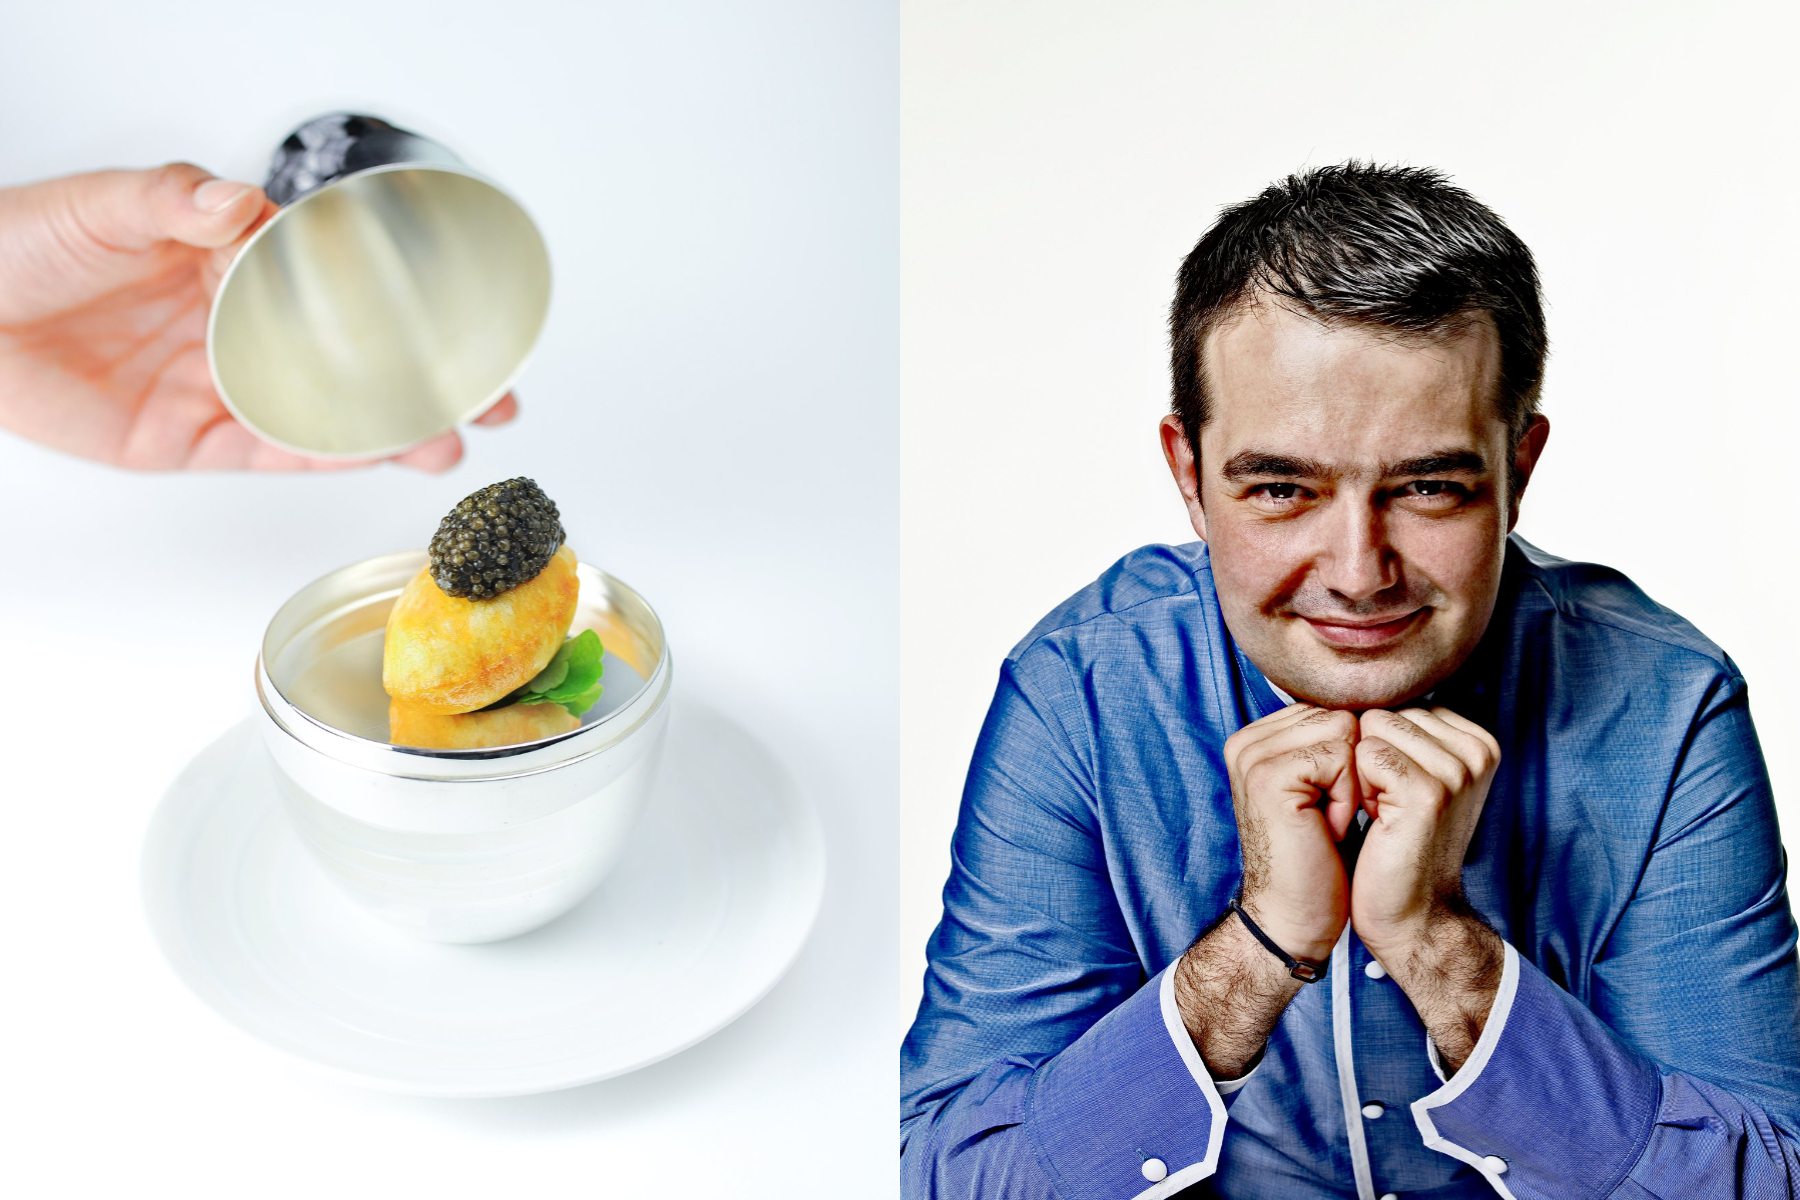 法國中生代傳奇主廚Jean-François Piège再訪樂沐！師徒四手聯烹演繹法式華麗盛宴